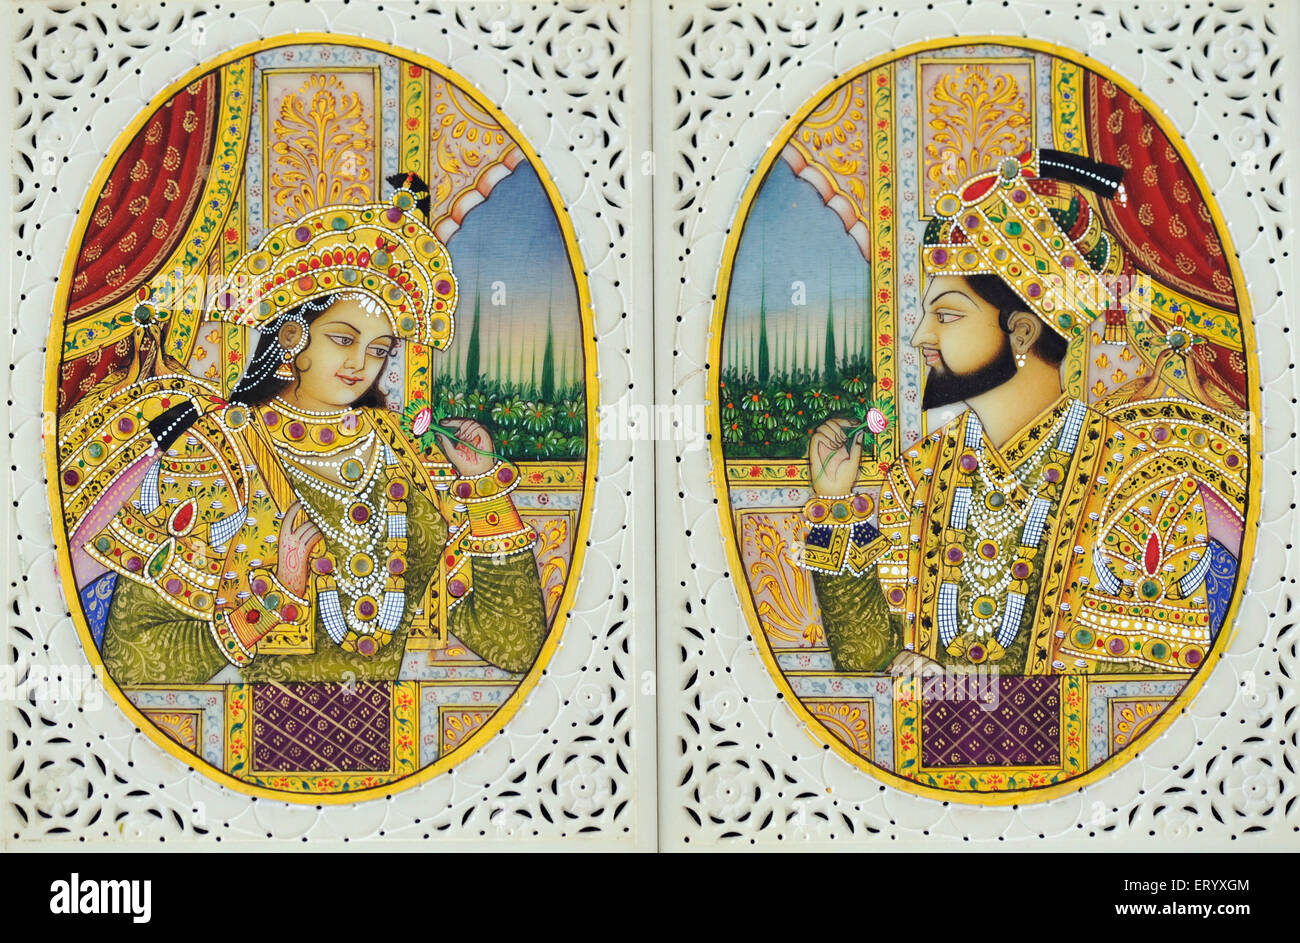 Shah jahan and mumtaz mahal painting hi-res stock photography and ...